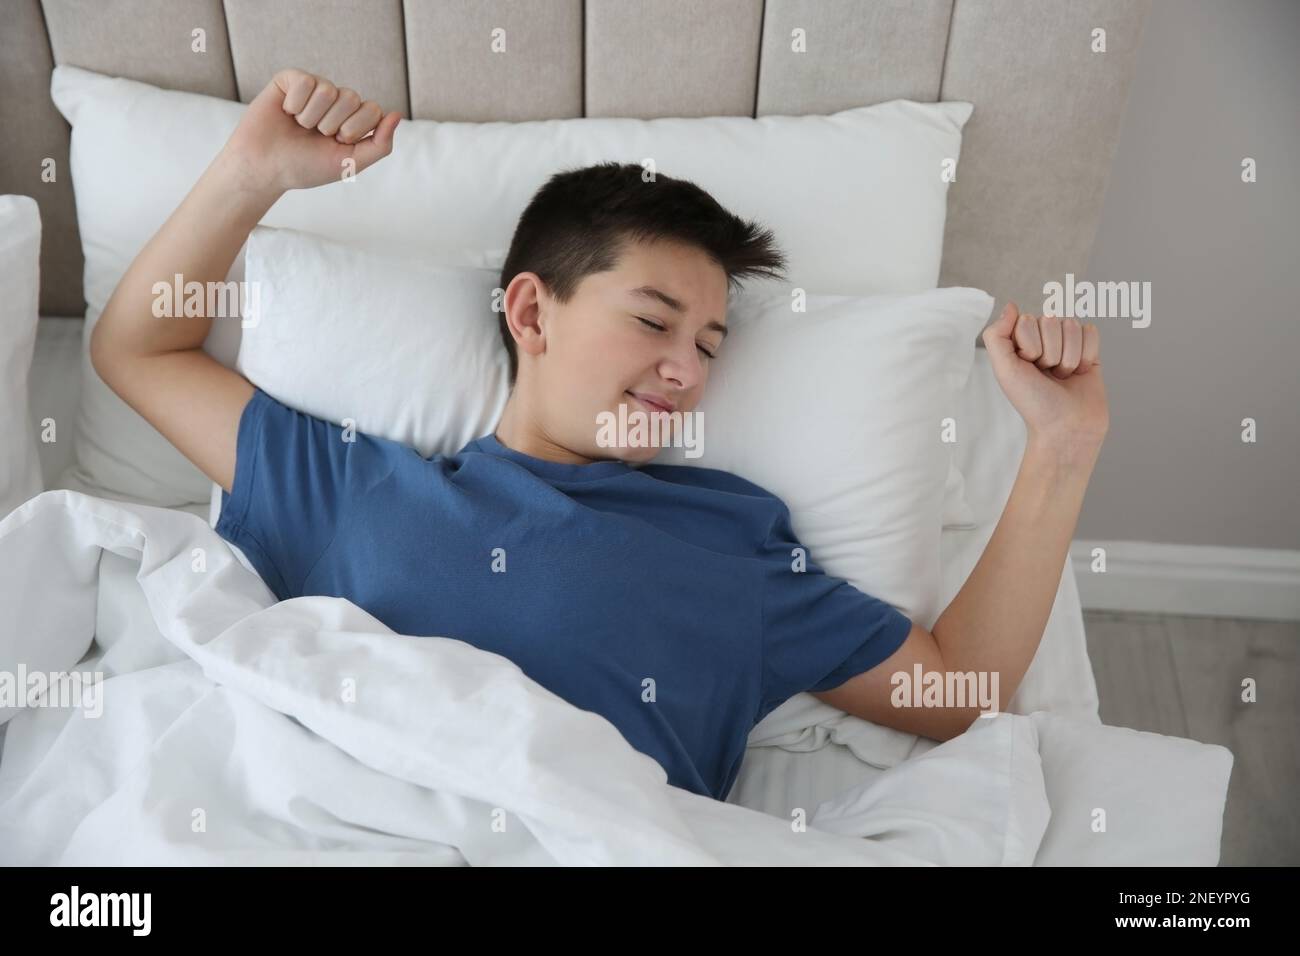 Retrato de mujer relajado placer estiramiento en la cama en el dormitorio  con ropa de cama limpia y blanca mirando el reloj despertador en la mesilla  de noche Fotografía de stock 